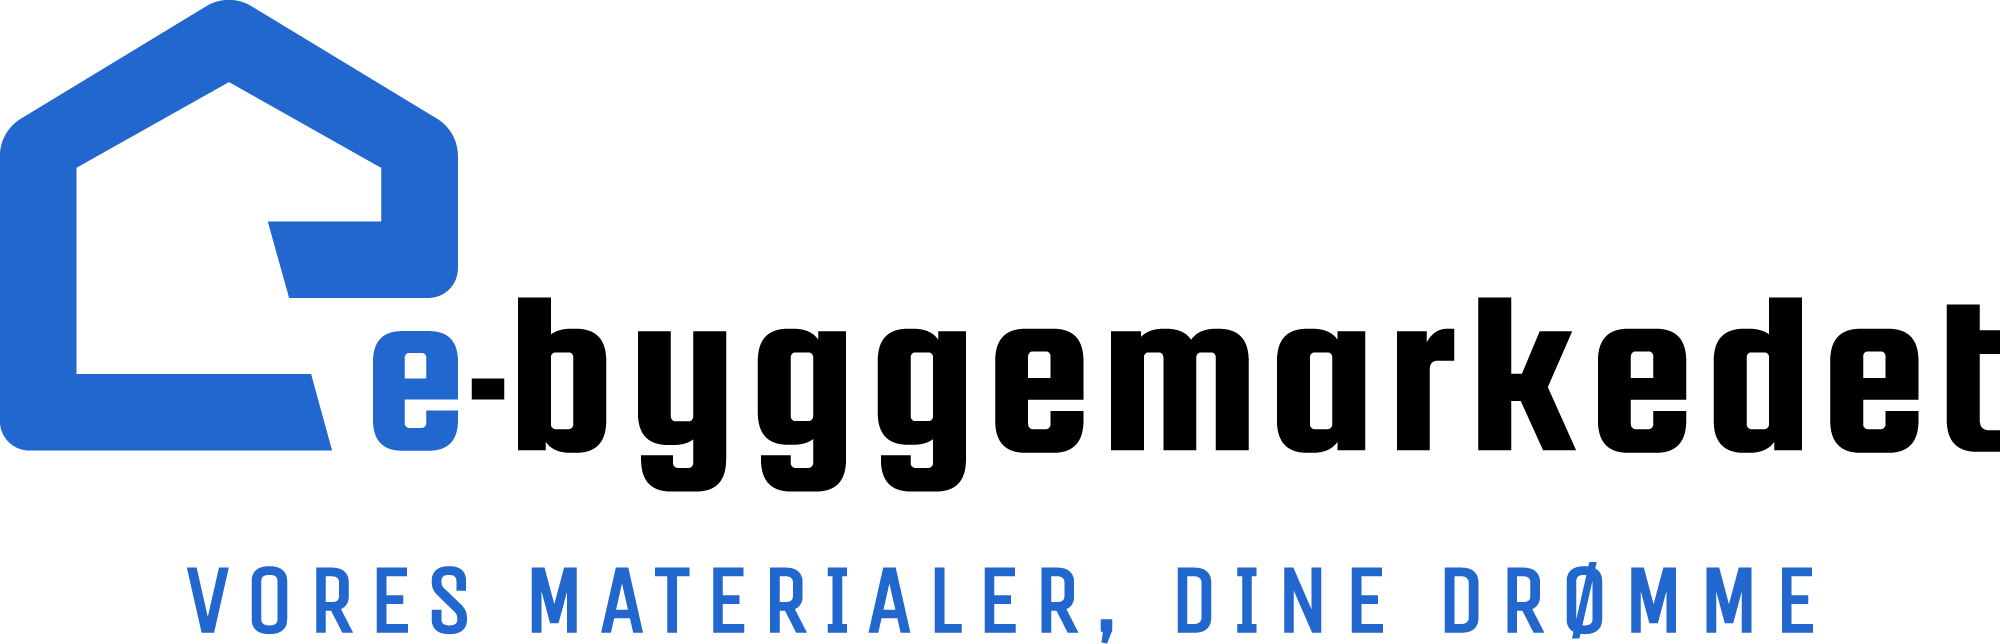 e-byggemarkedet logo